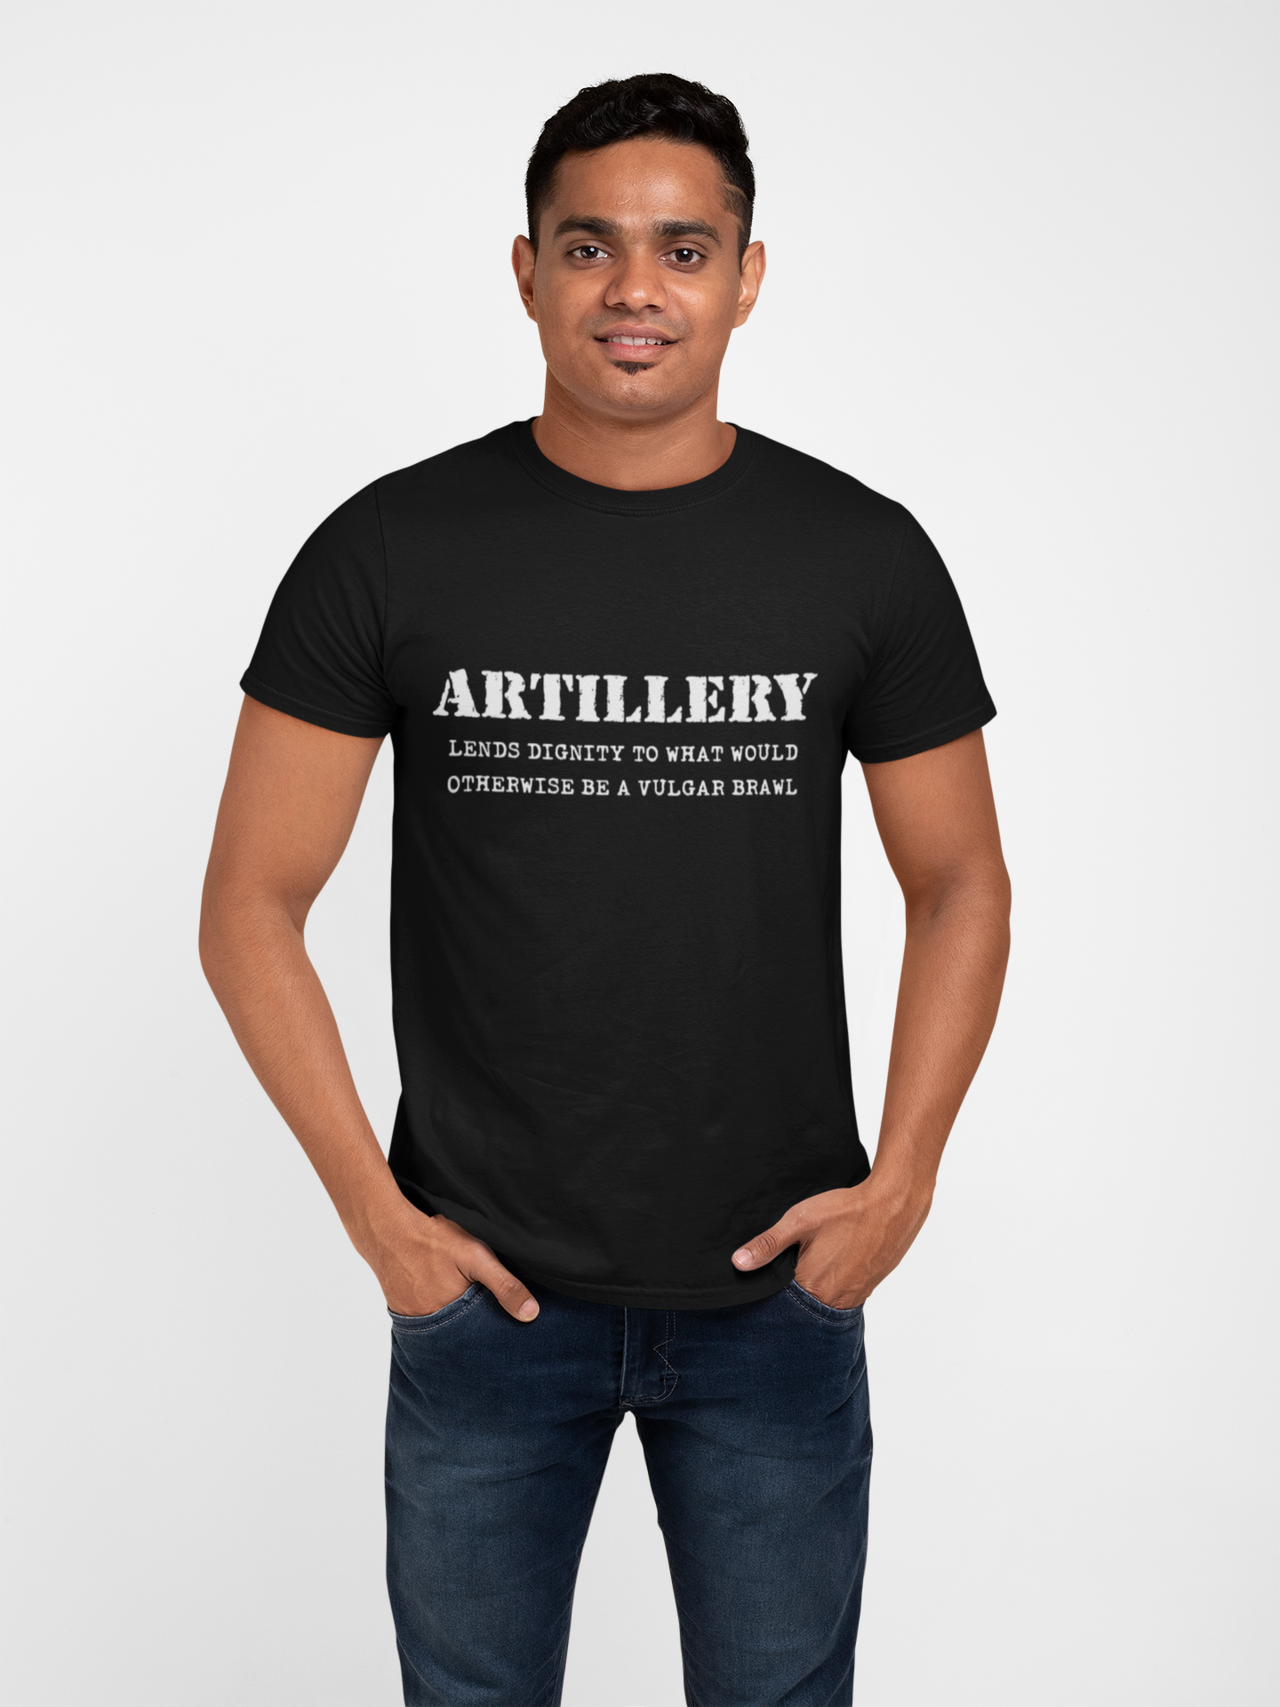 Artillery T-shirt - Lends Dignity..... (Men)